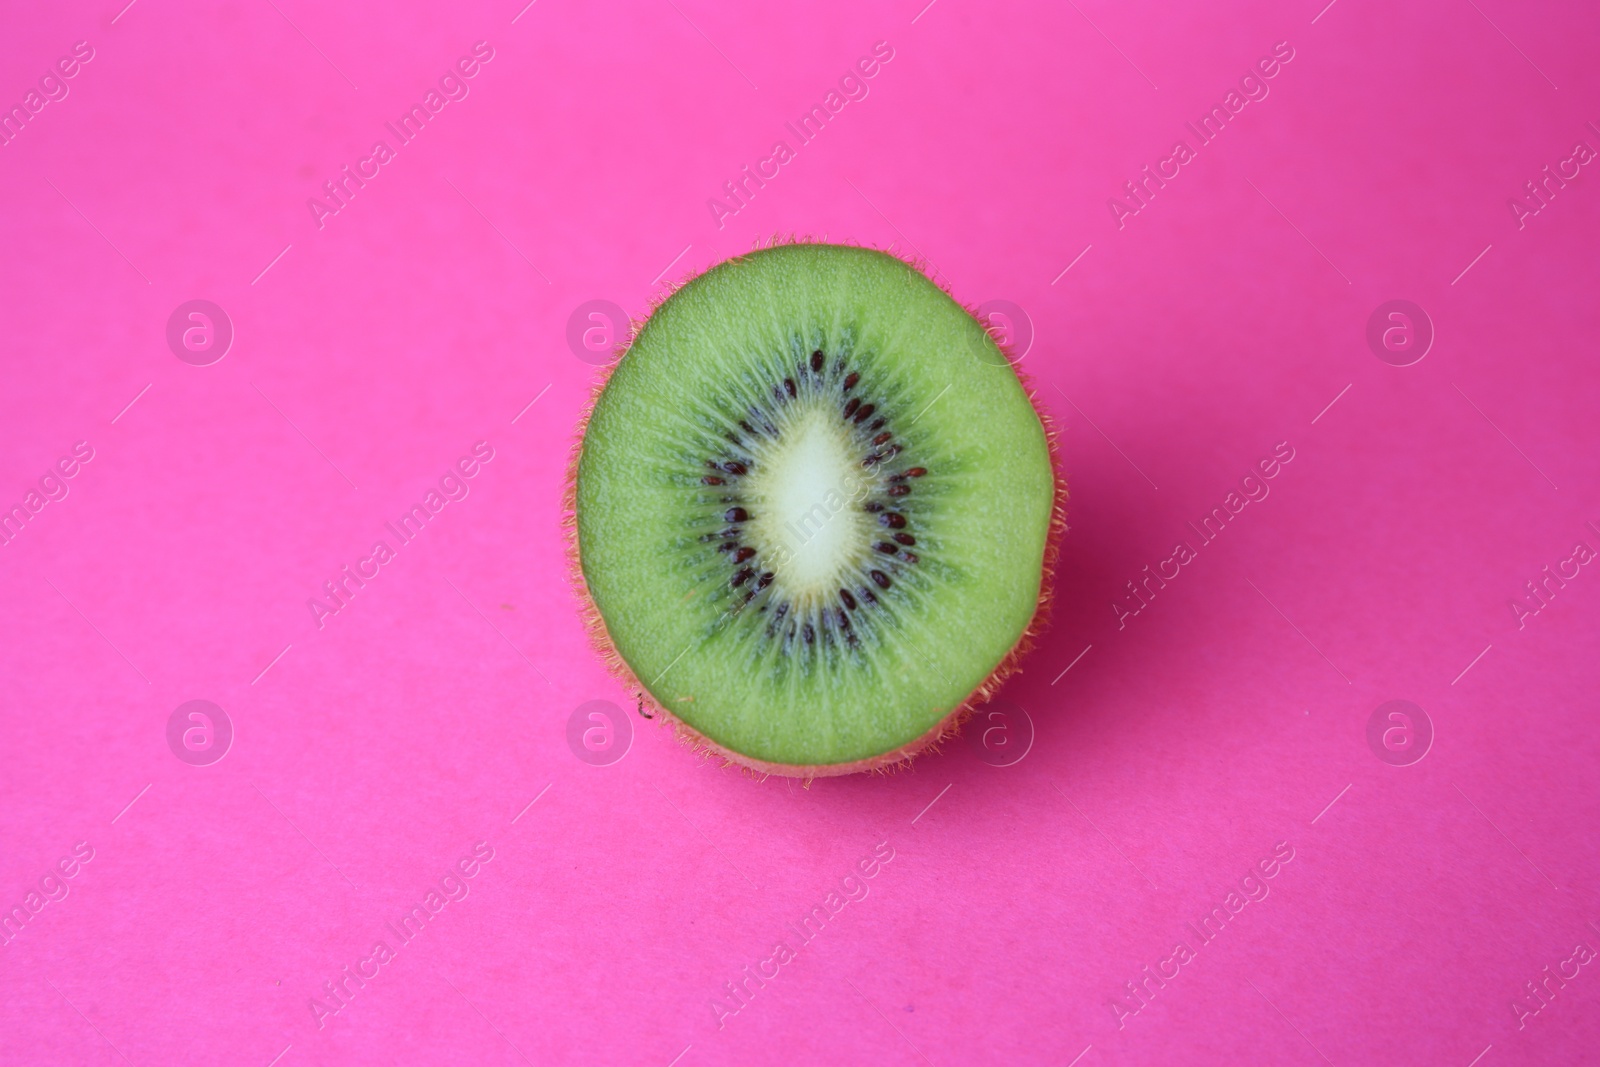 Photo of Cut fresh ripe kiwi on pink background